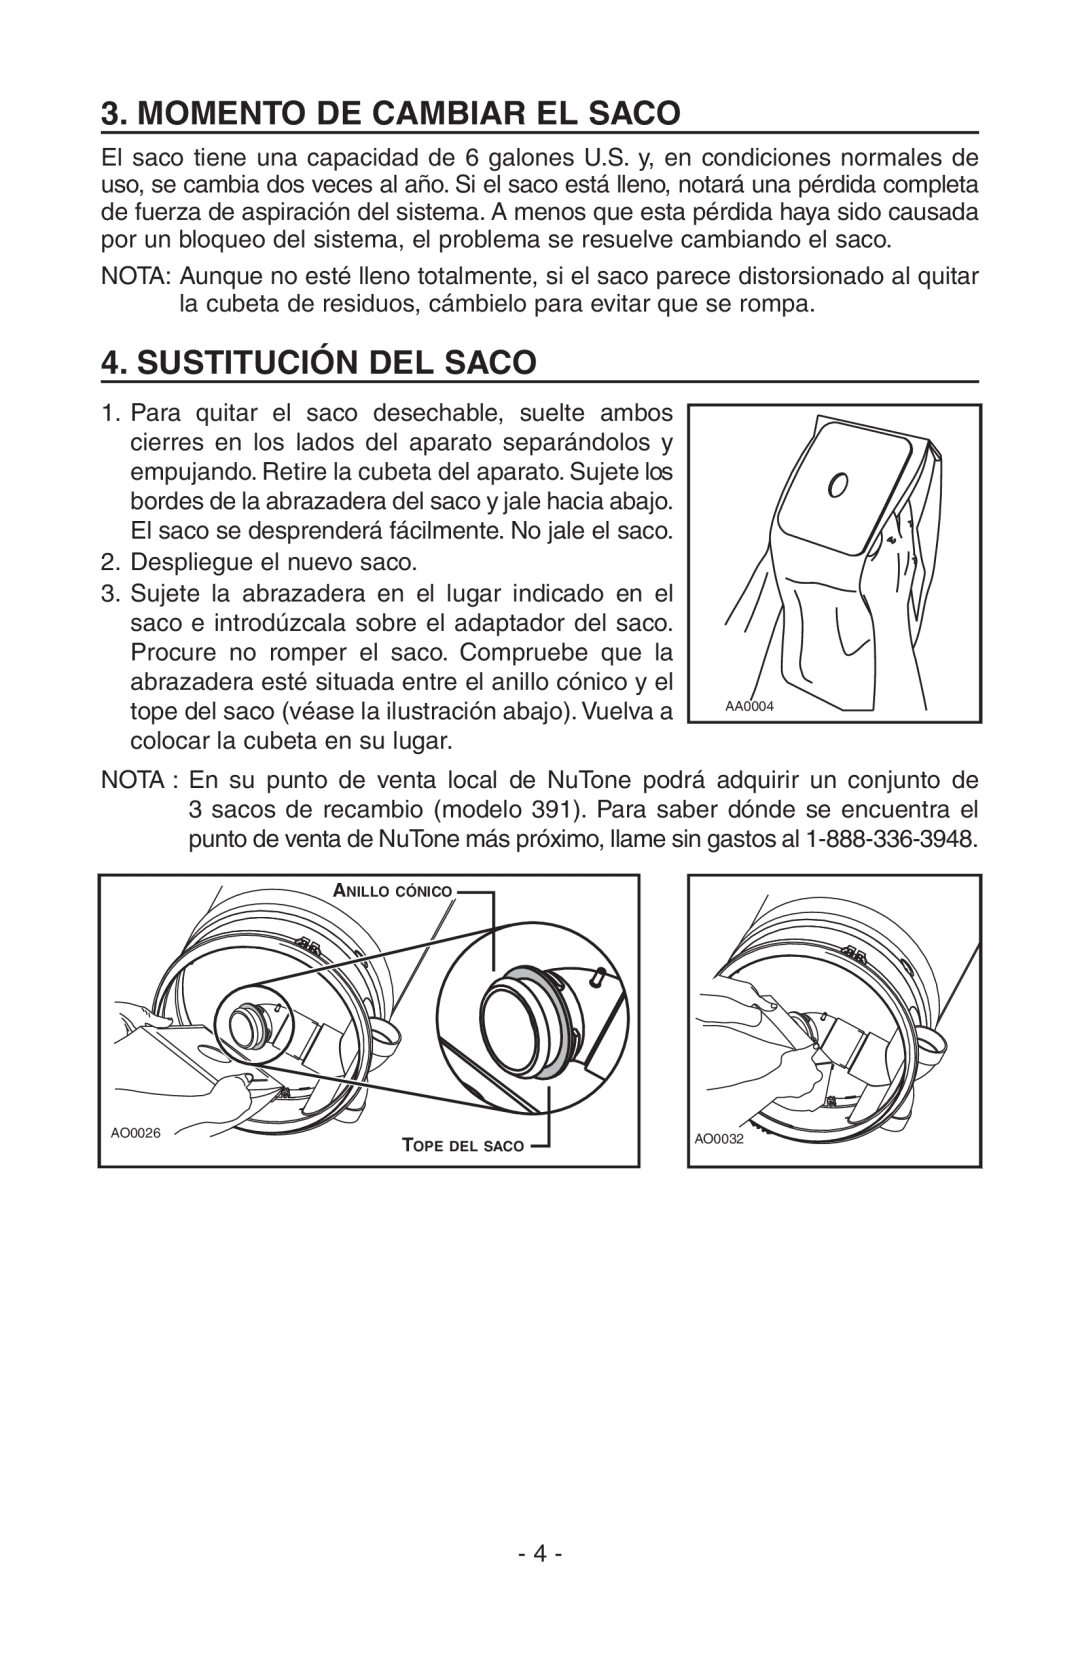 NuTone SFDB-DC, CV400 manual Momento De Cambiar El Saco, Sustitución Del Saco 